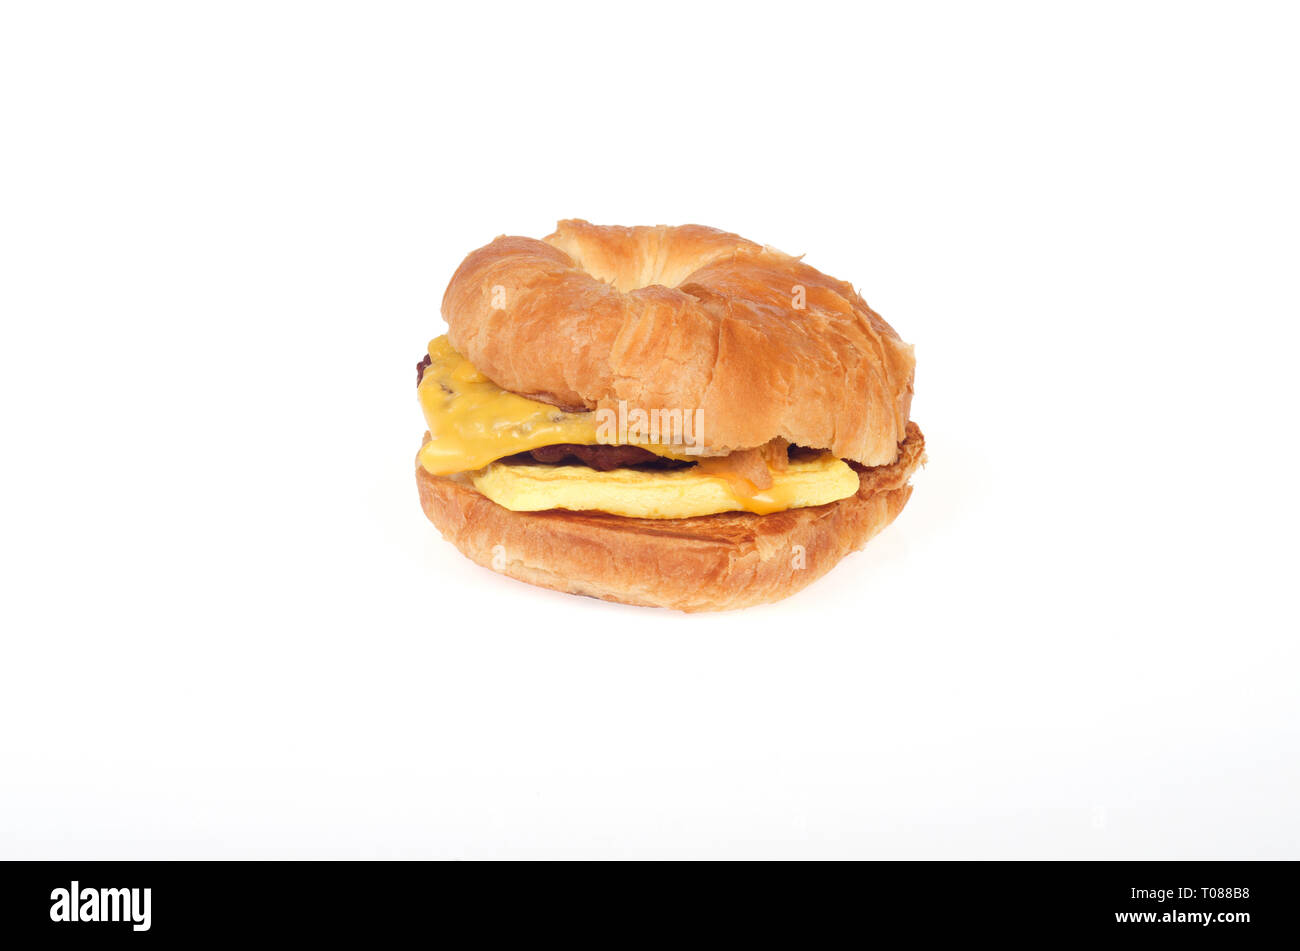 Burger King Würstchen, Eier und Käse croissan', oder Croissant auf weißem Hintergrund Stockfoto